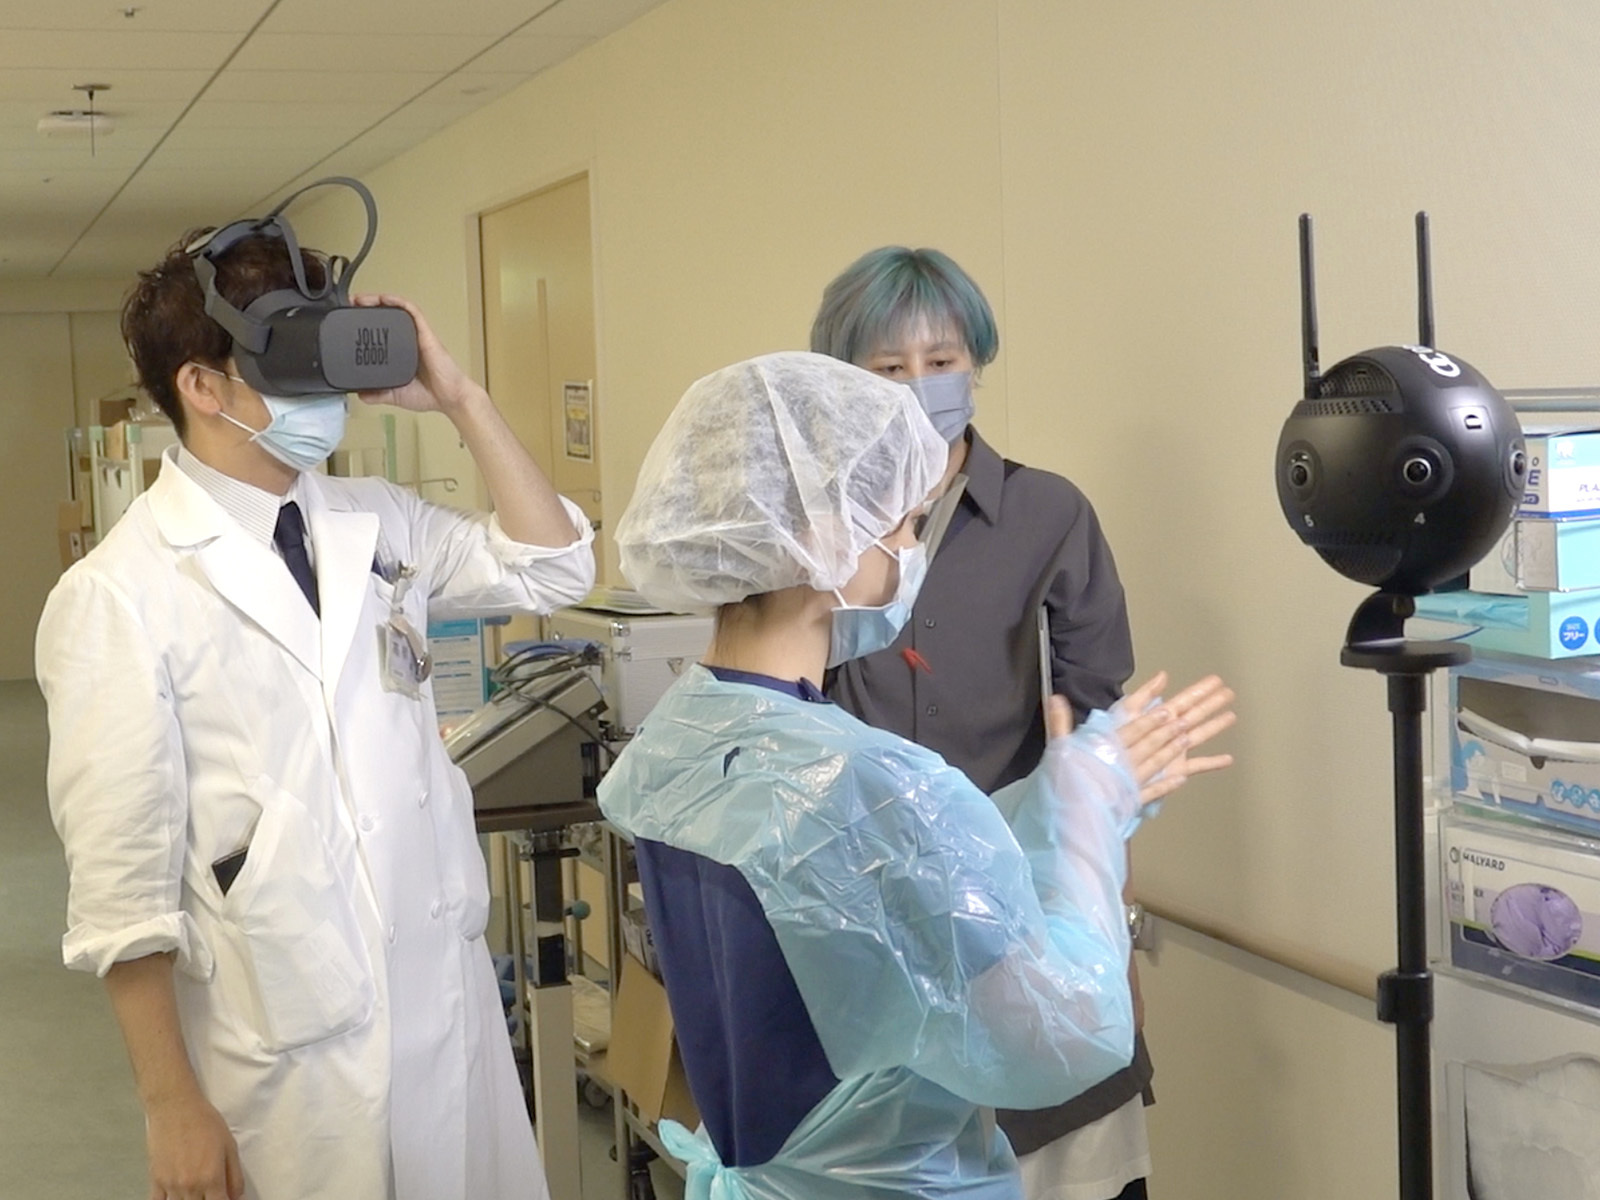 NHKニュースにて、ジョリーグッドと順天堂大学が共同開発する感染症診療VRが紹介されました。